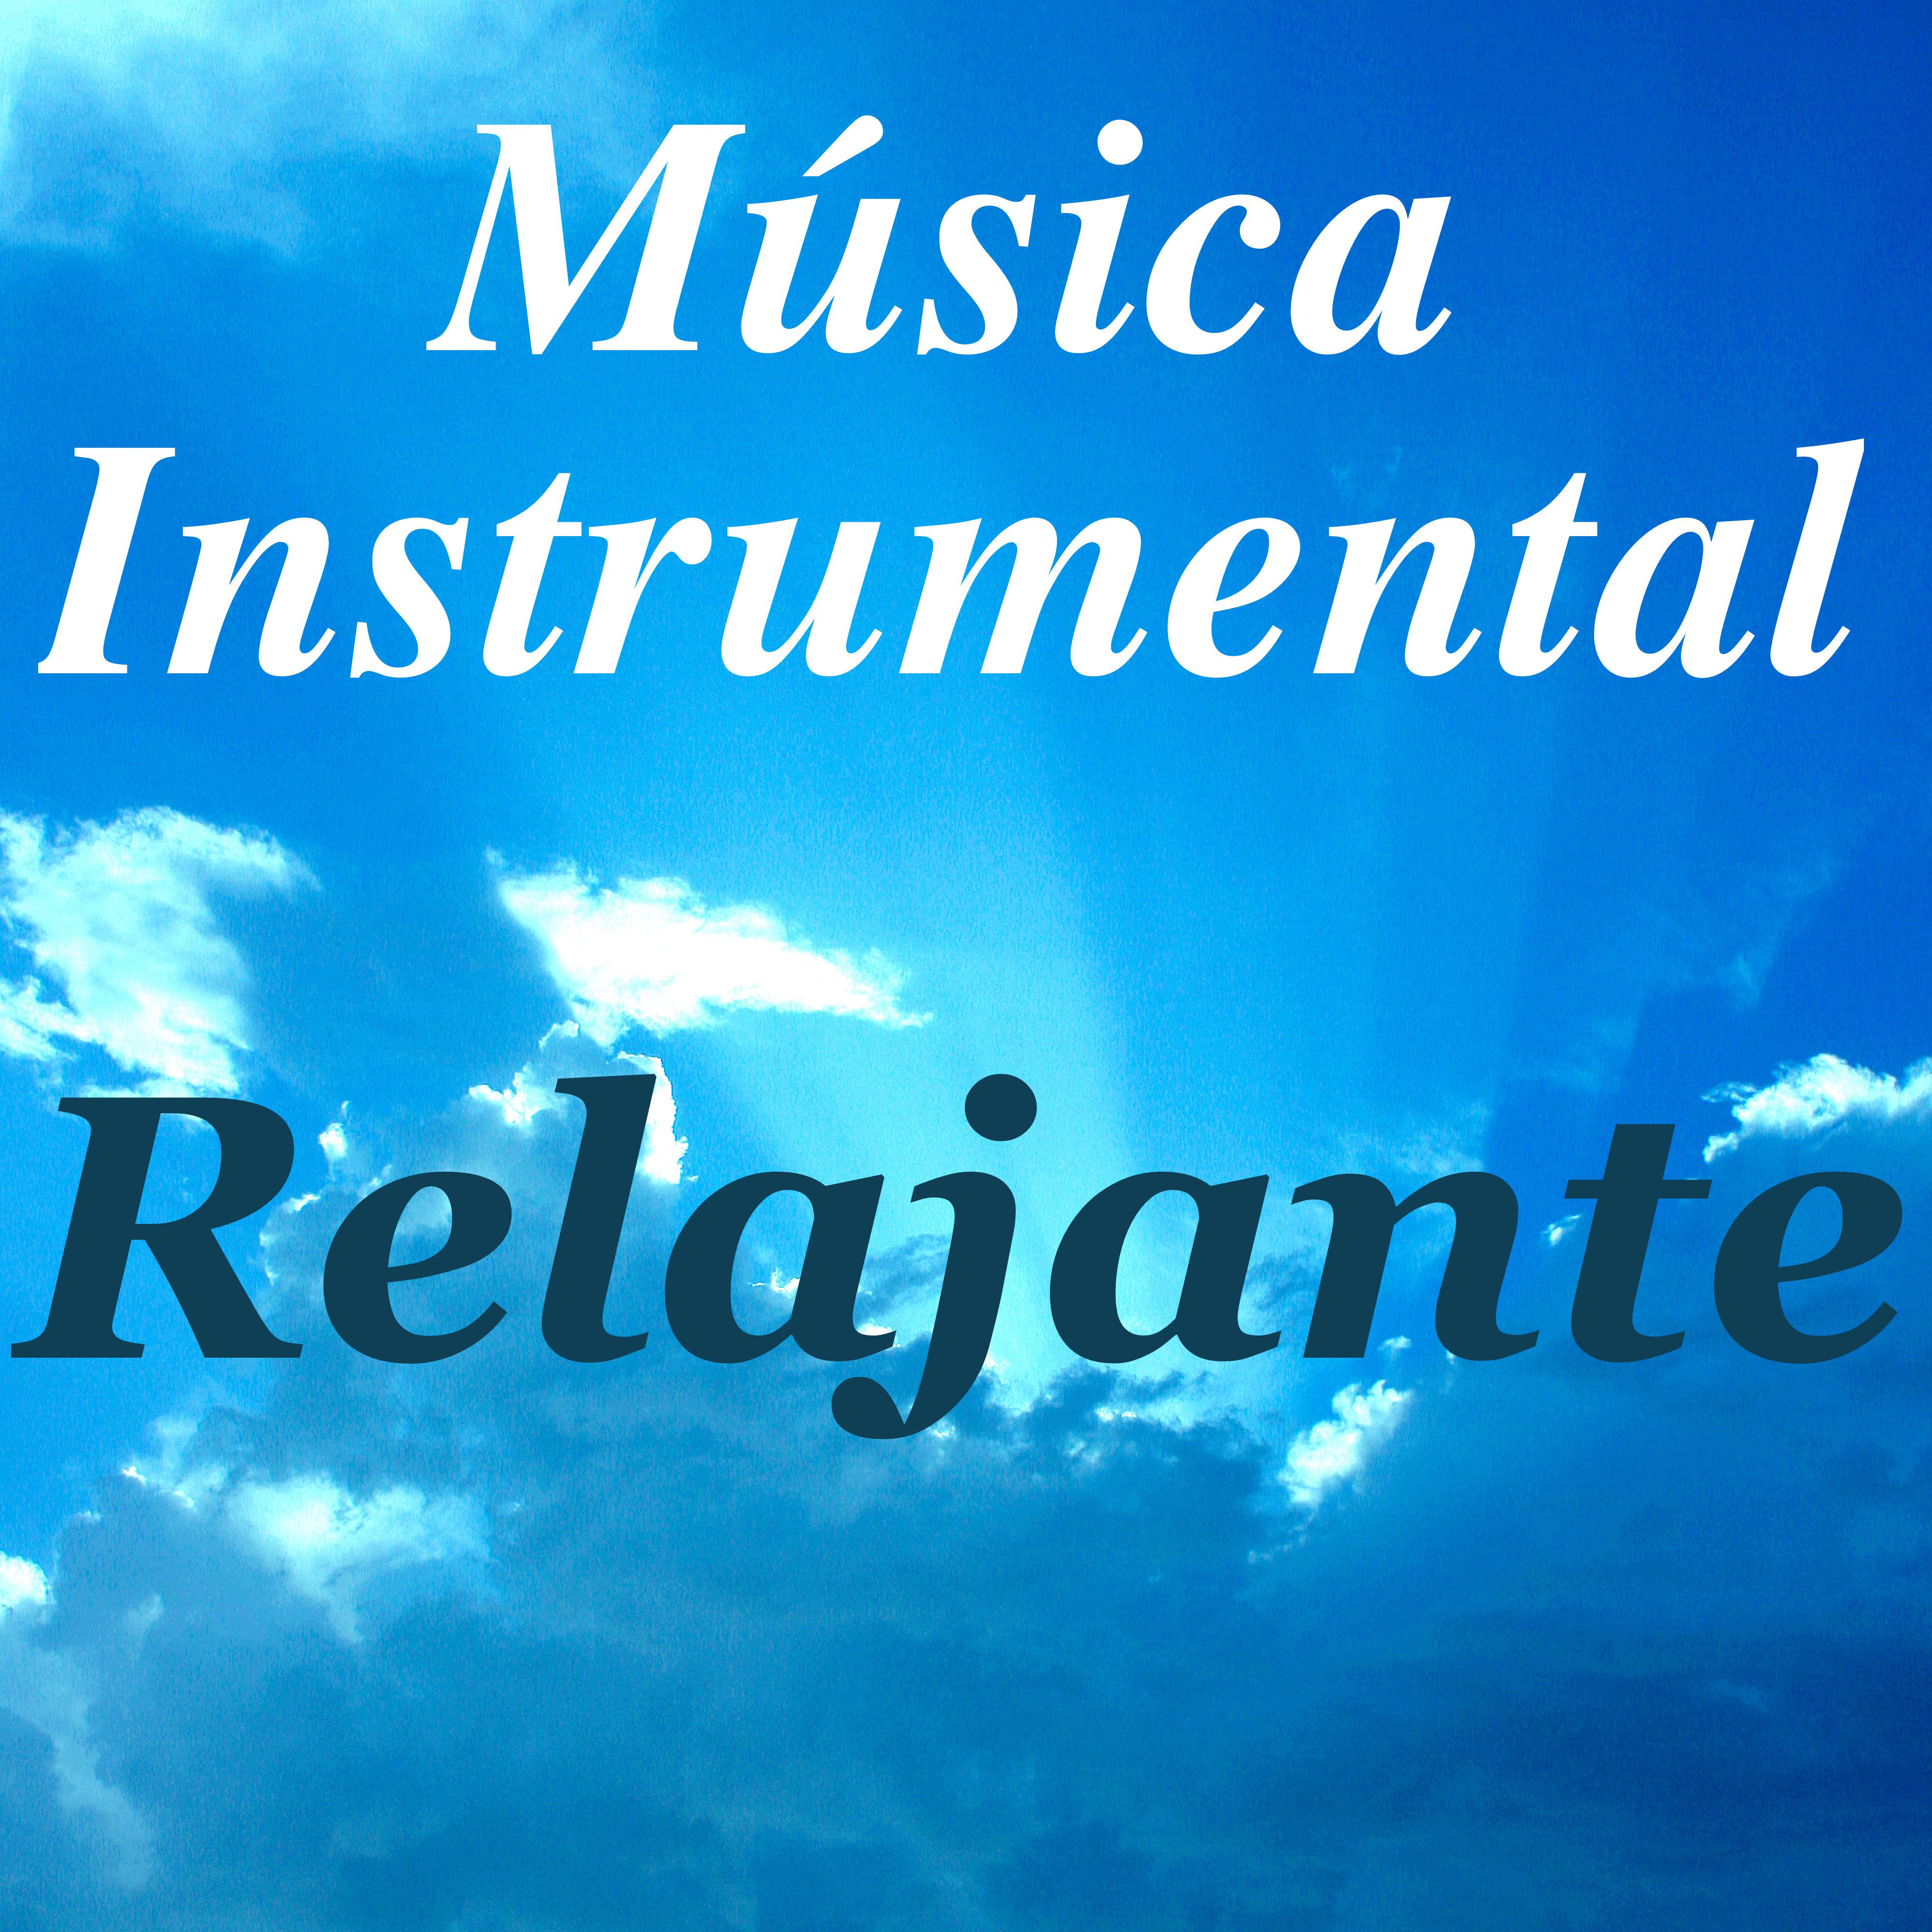 Background Music with Sounds of Nature (Musica con Sonidos de la Naturaleza)